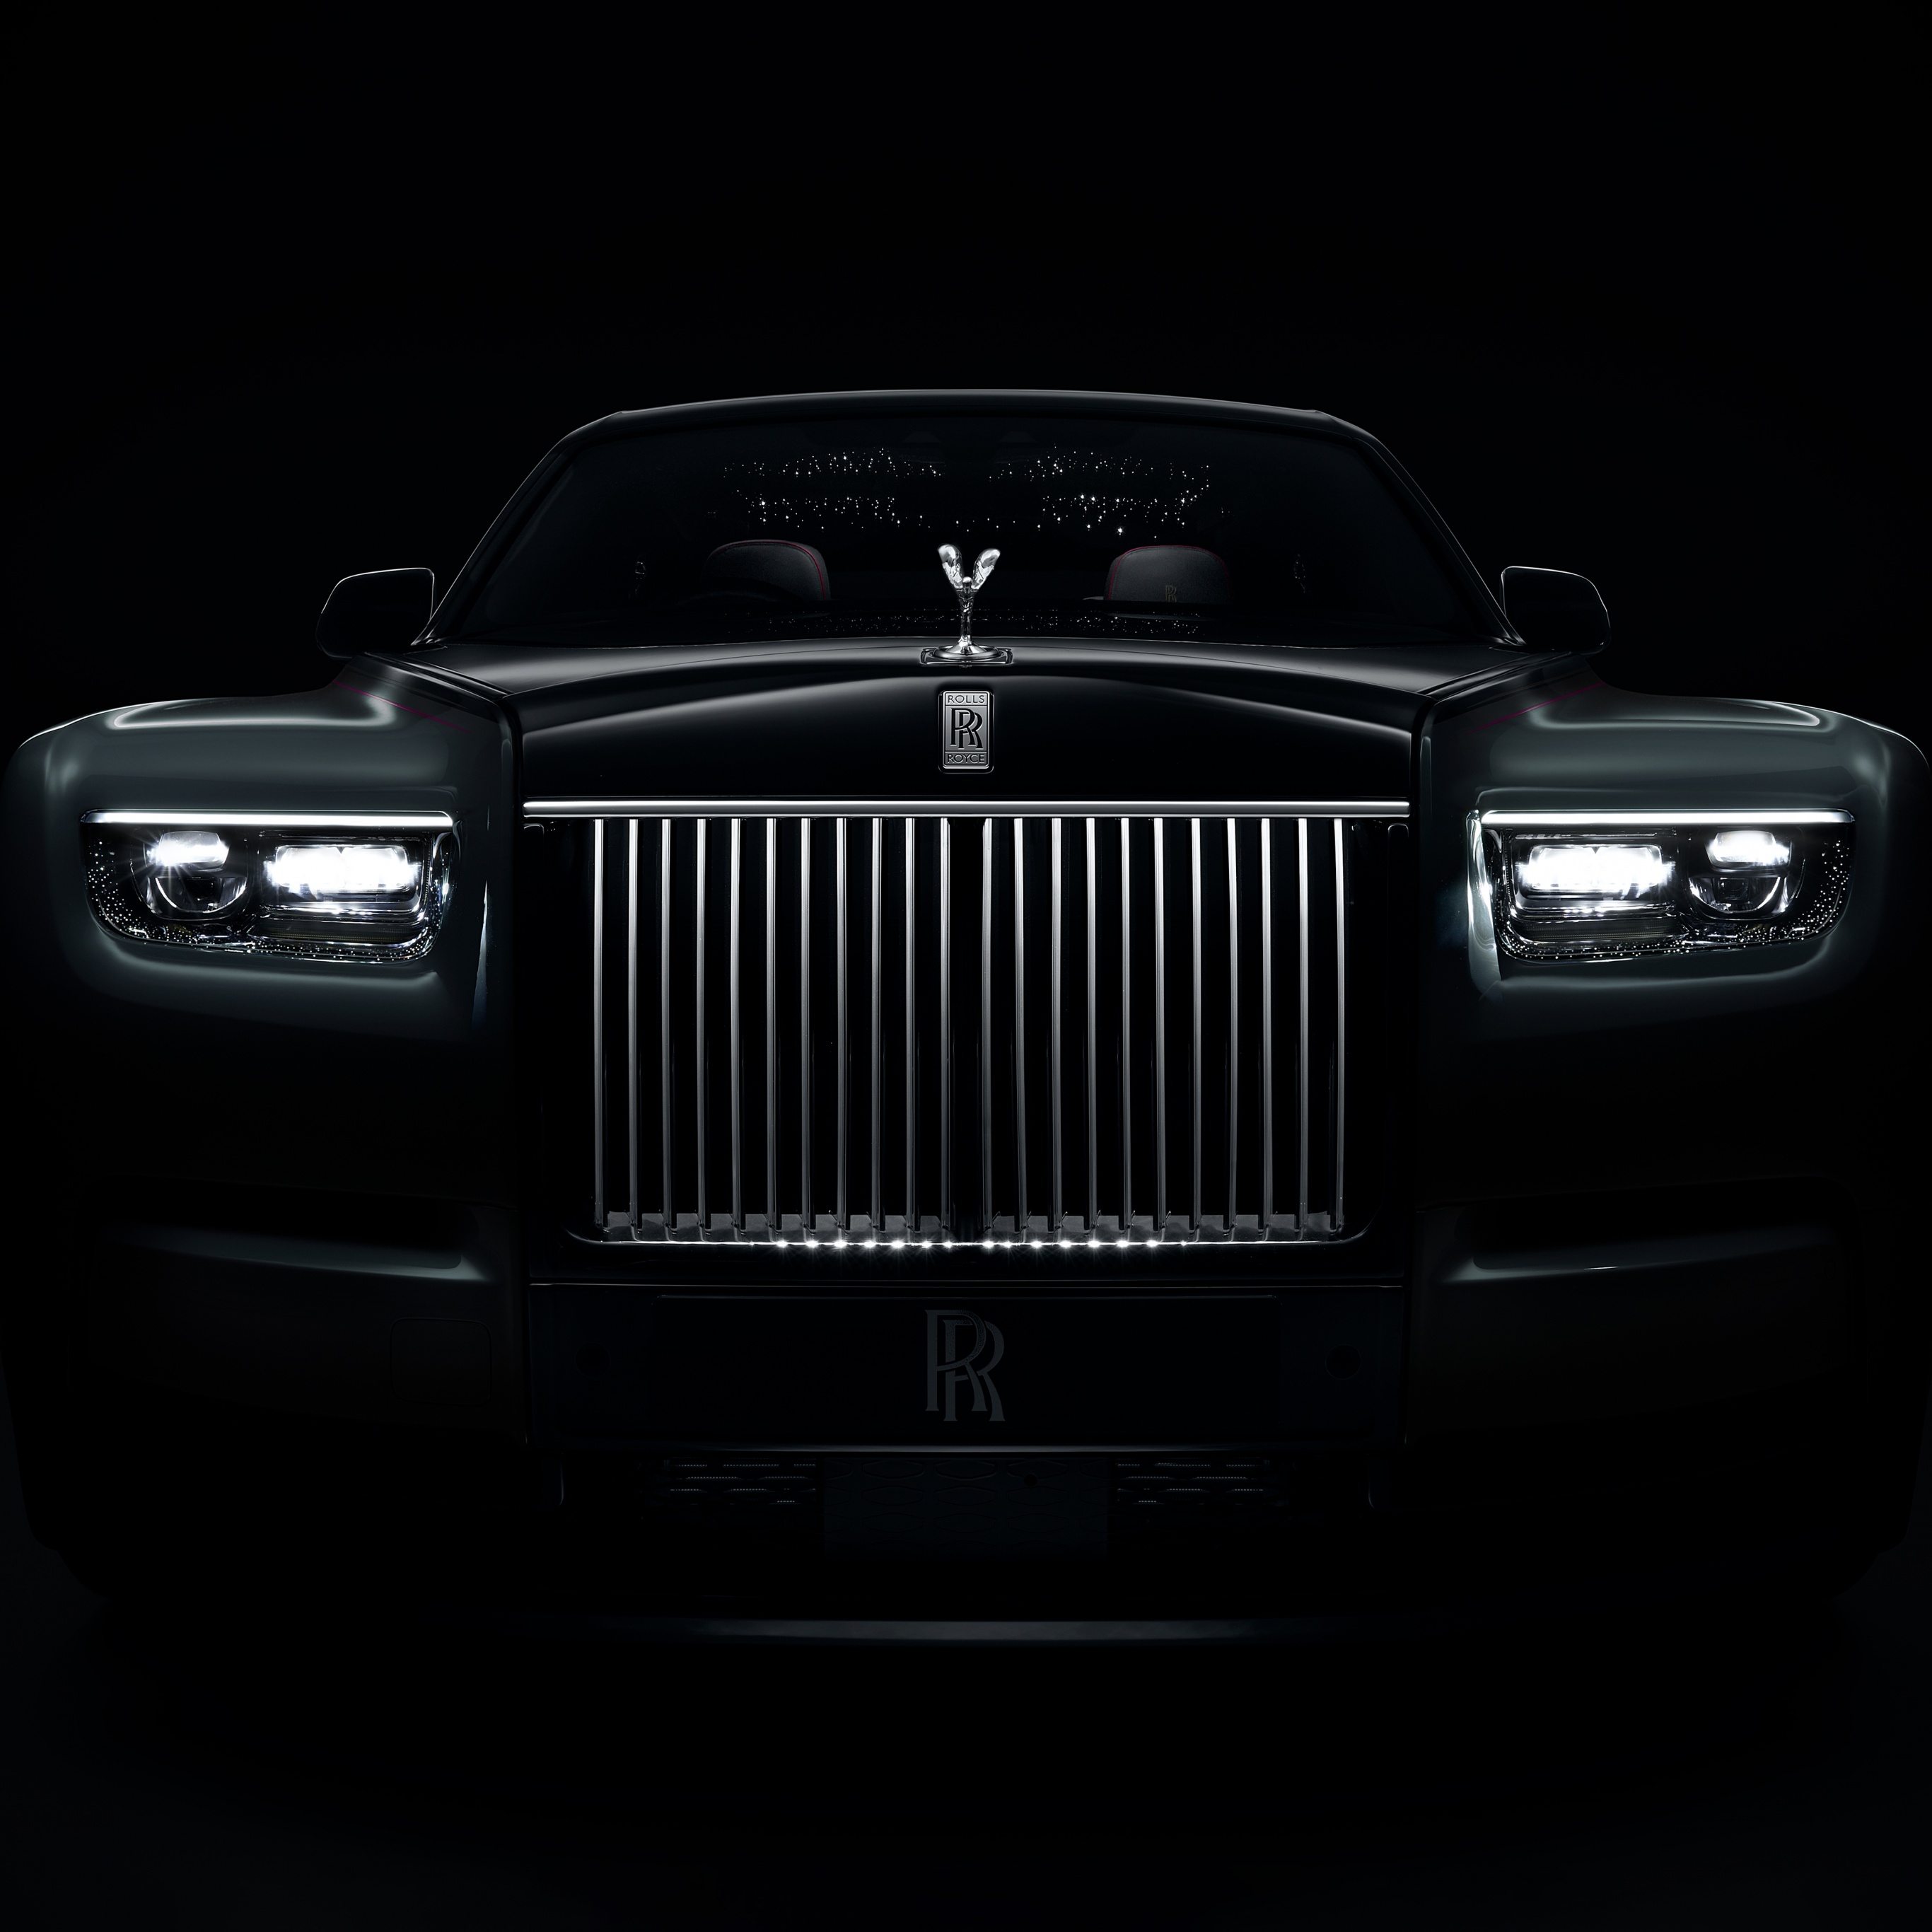 Rolls-Royce Phantom Series II Wallpaper 4K, Black cars, Black/Dark, #8124